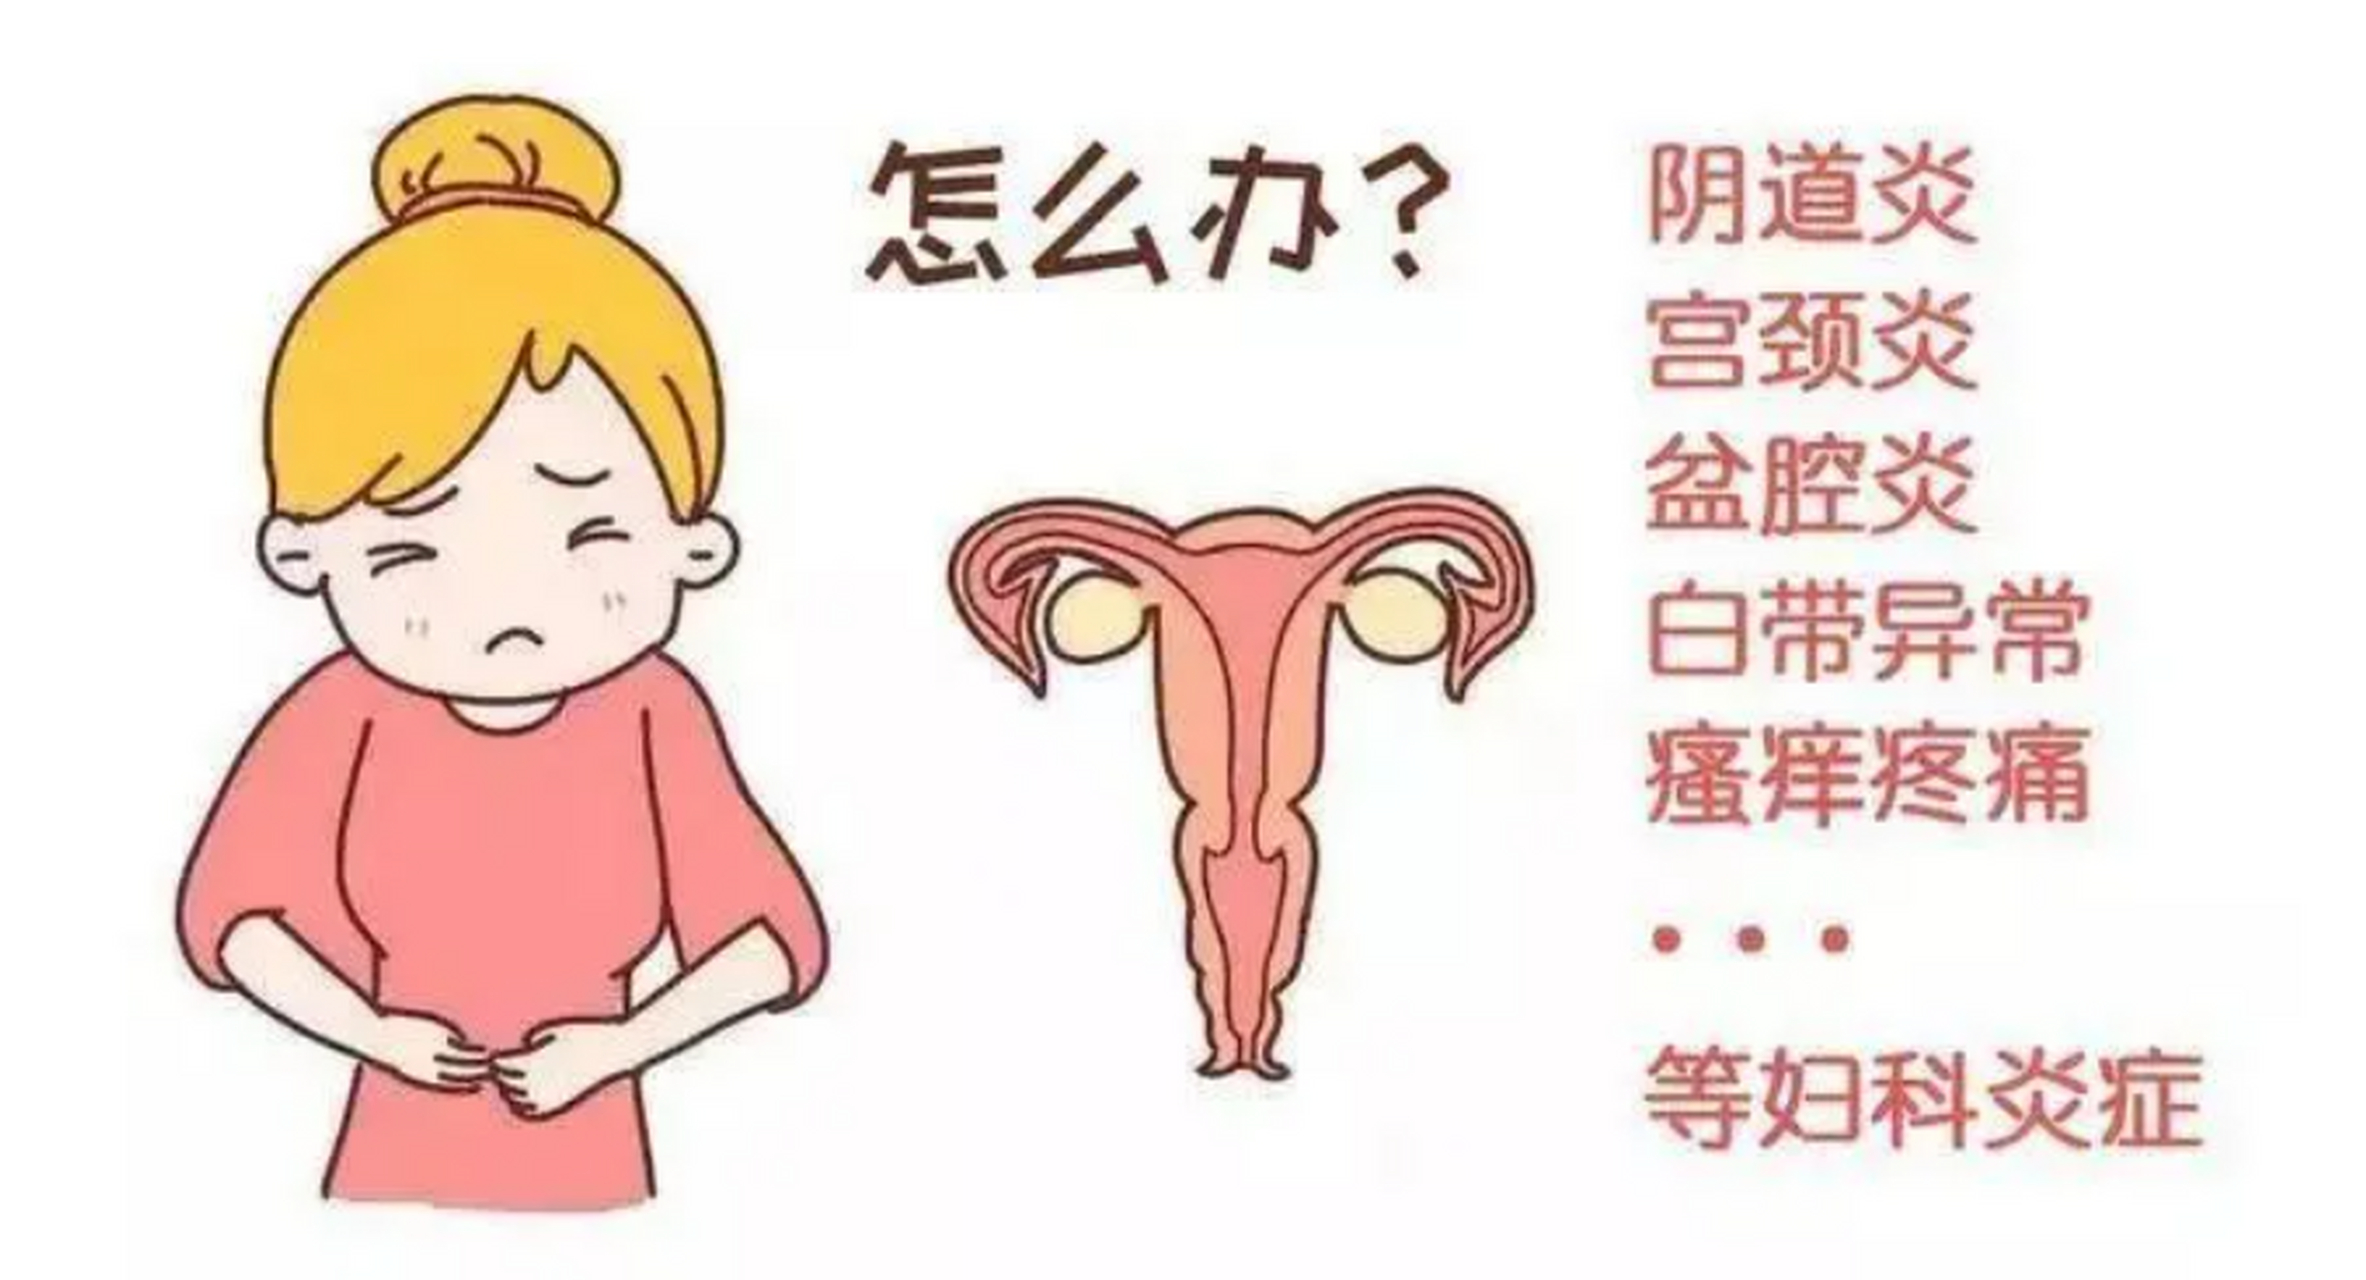 其中,宫颈炎是一种常见的妇科炎症,主要是由细菌,病毒,真菌等引起的